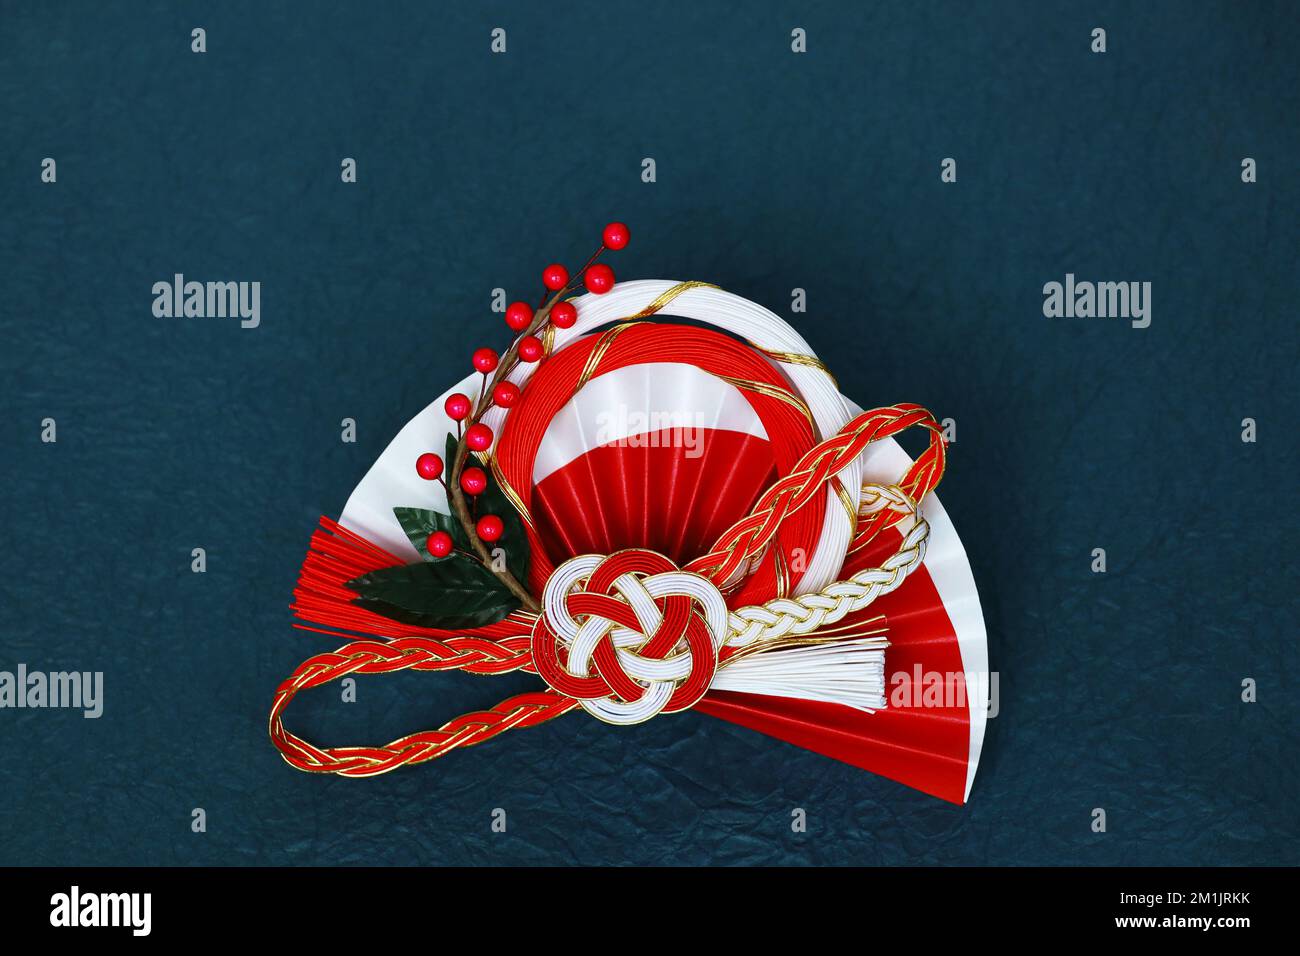 Still Life of Japanese New Year Decoraciones como material para las tarjetas de felicitación de Año Nuevo Foto de stock